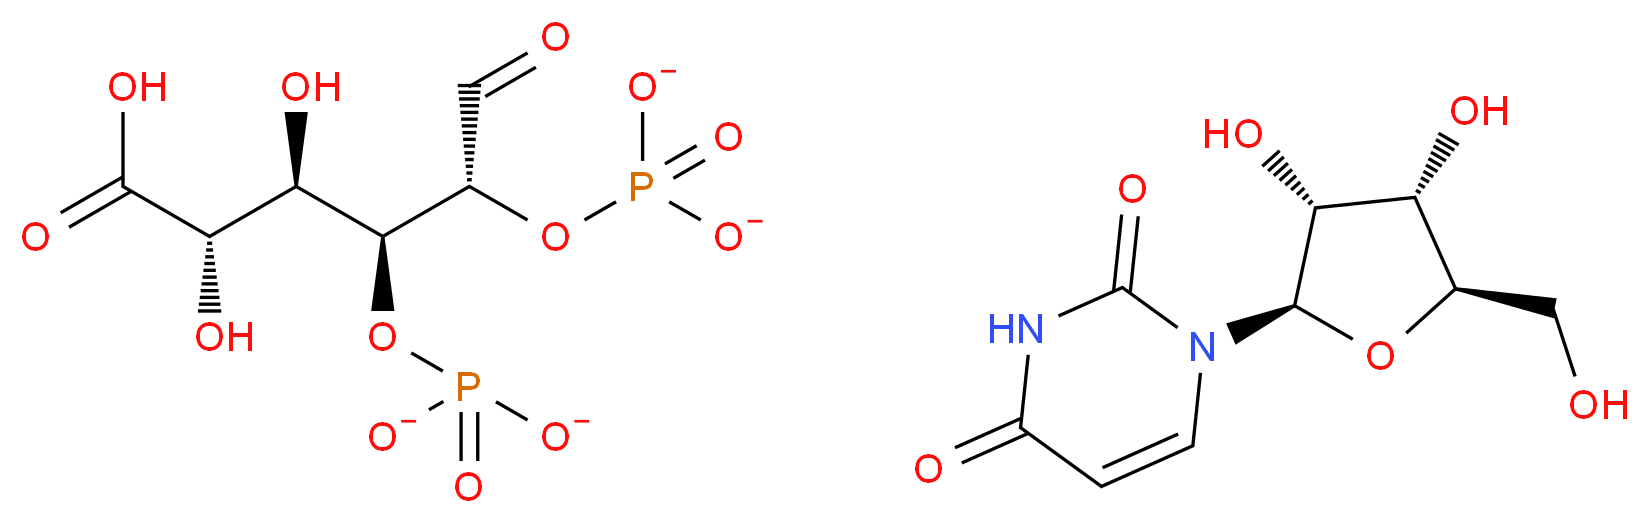 2616-64-0 molecular structure